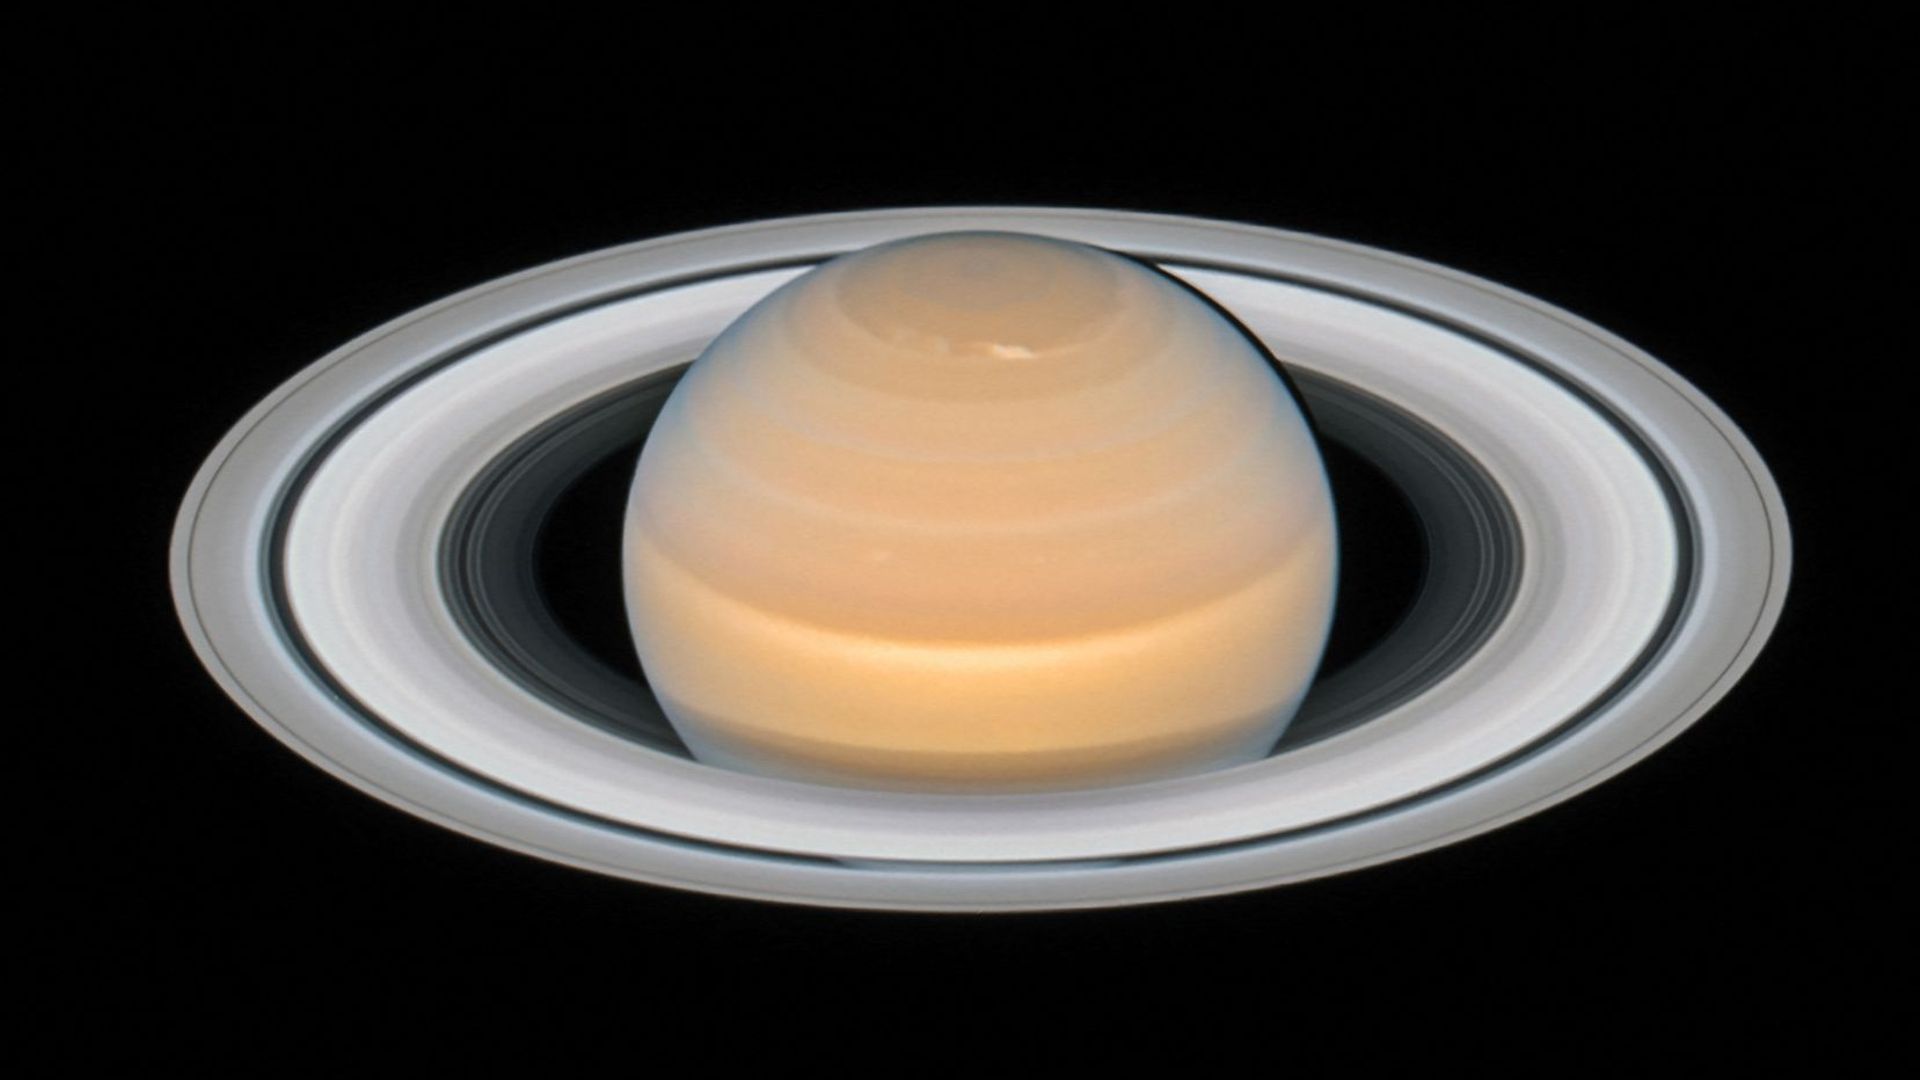 Représentation de Saturne proposée en 2018 par l’ESA d’après les observations du télescope spatial Hubble